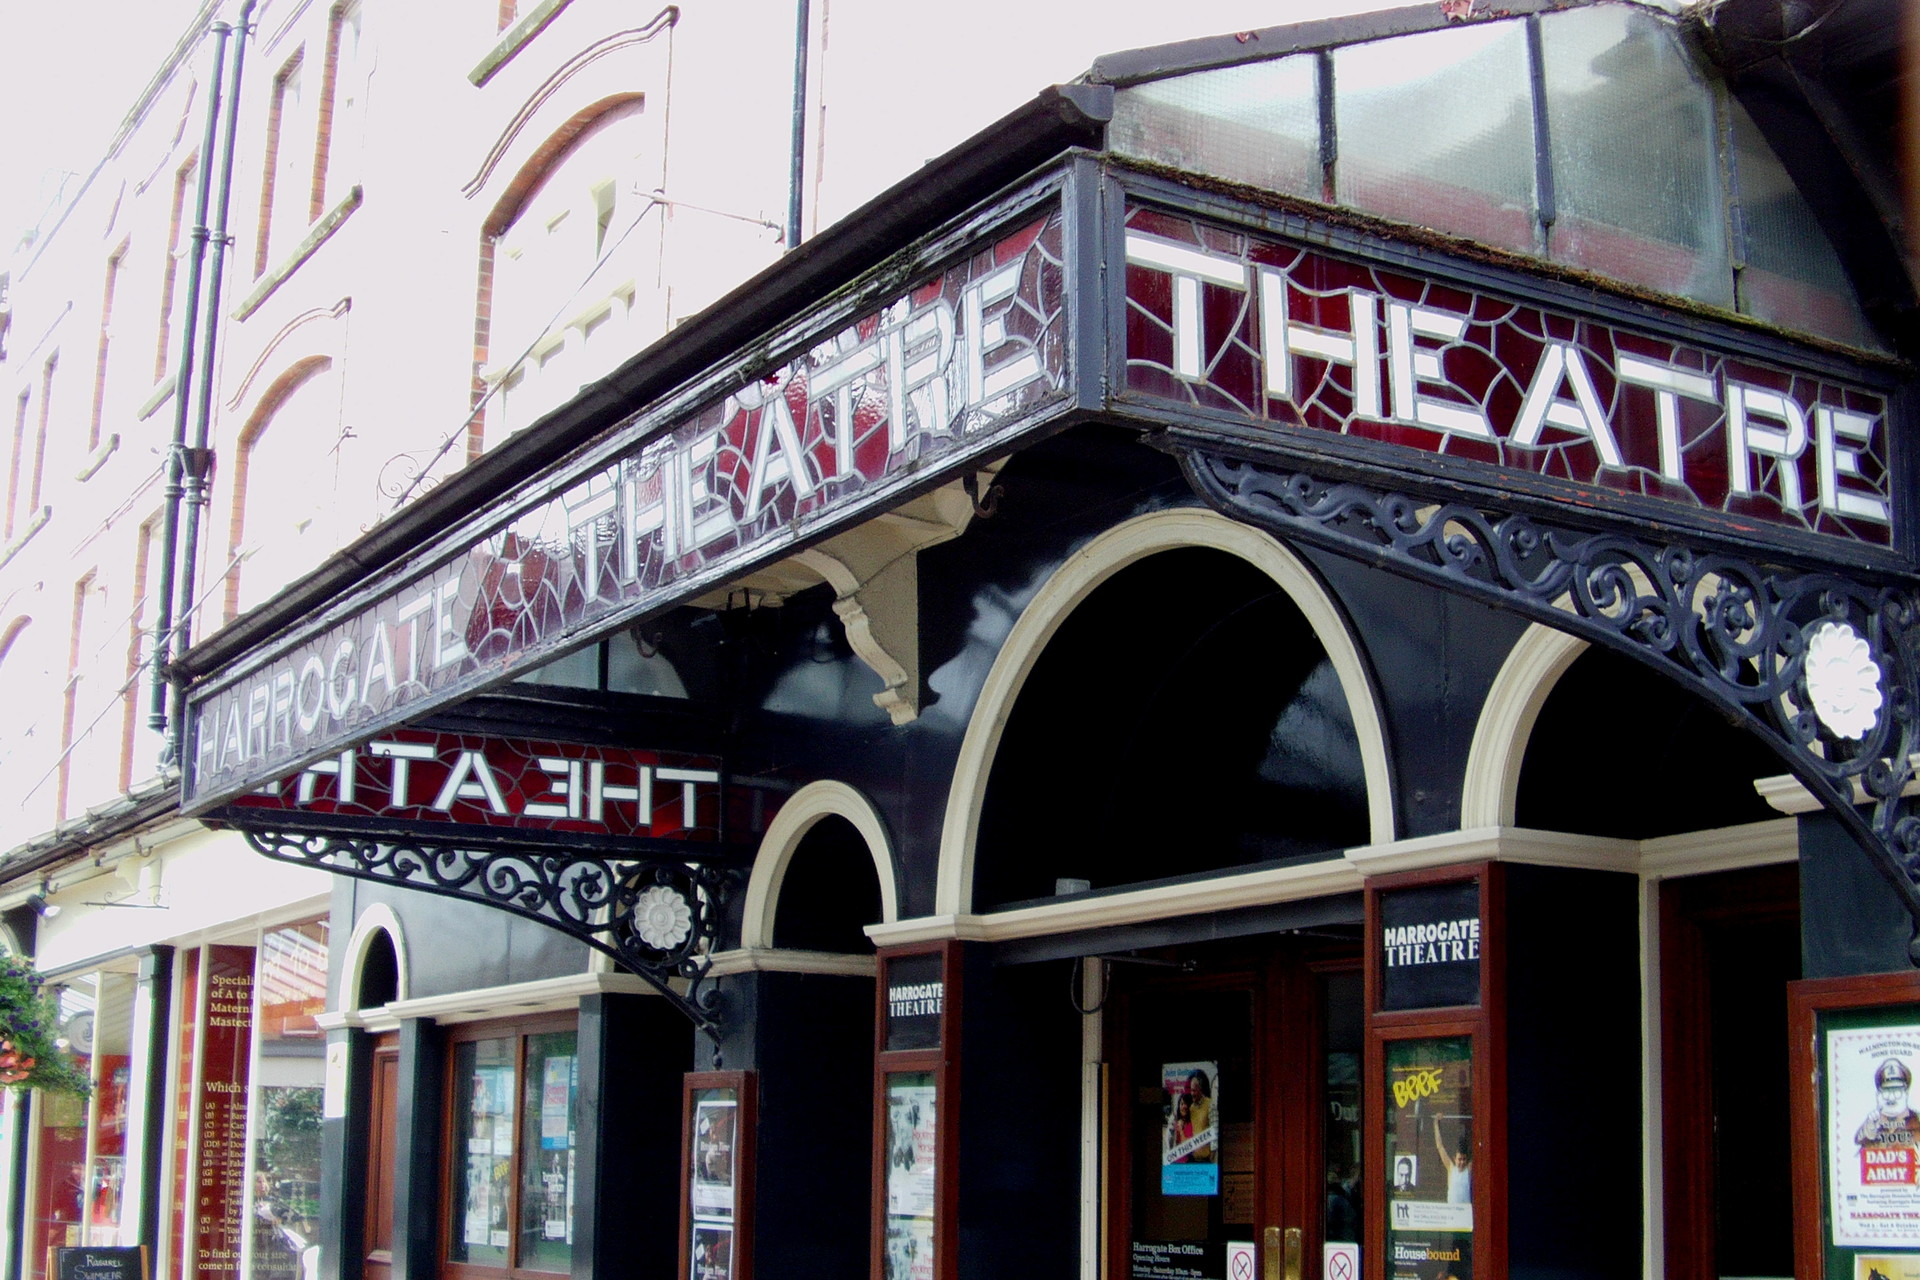 The Harrogate Theatre